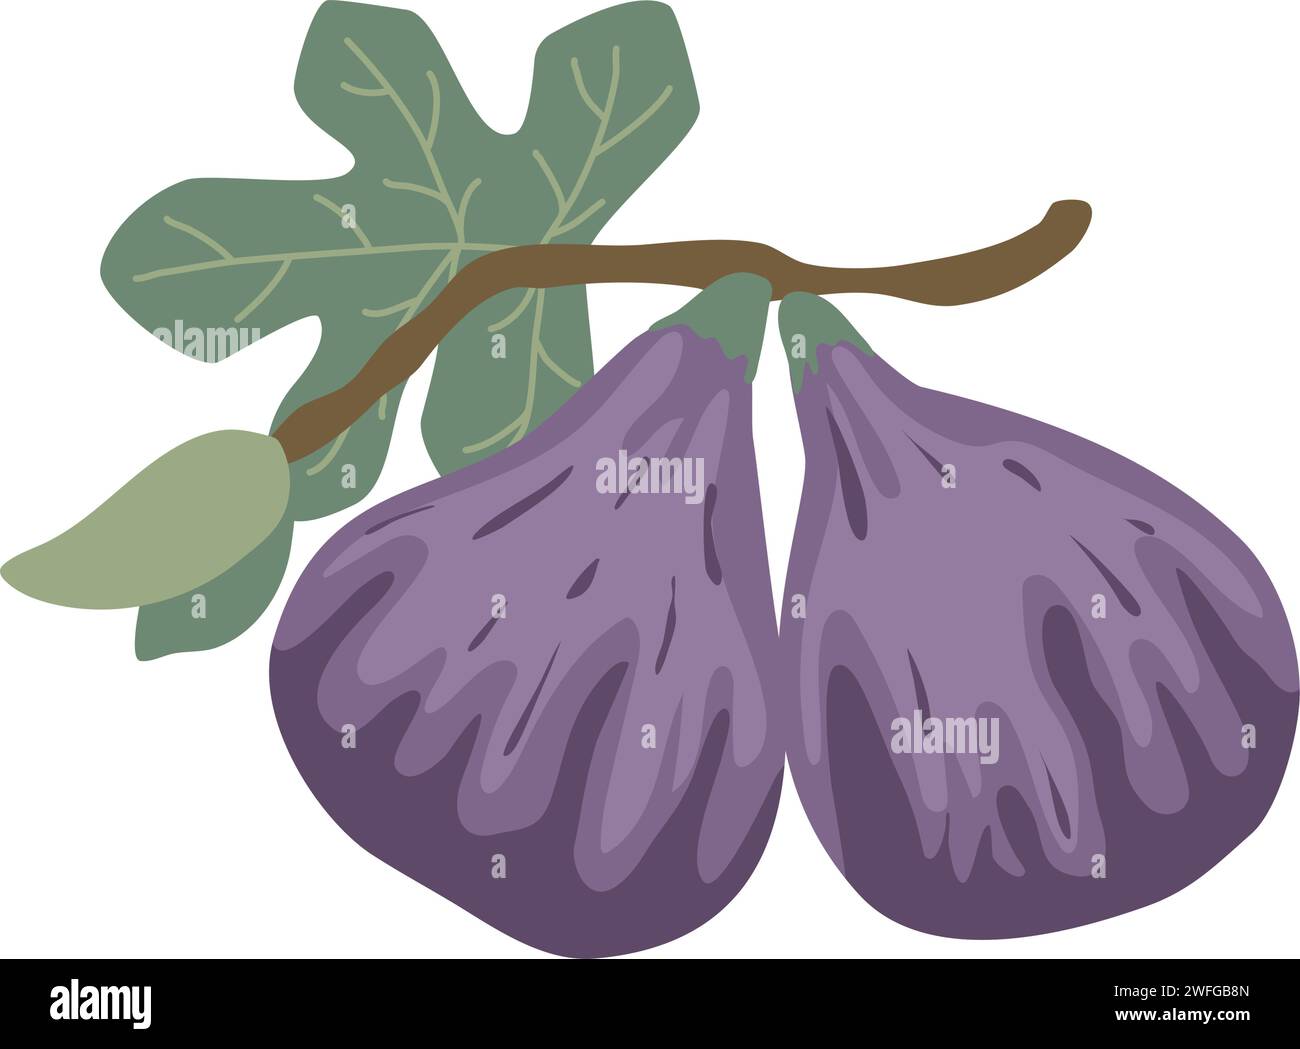 Fichi maturi disegnati a mano sulla clip art del ramo. Frutta di fico maturo viola che cresce su ramo con foglie, illustrazione vettoriale isolata. Cibo biologico sano Illustrazione Vettoriale